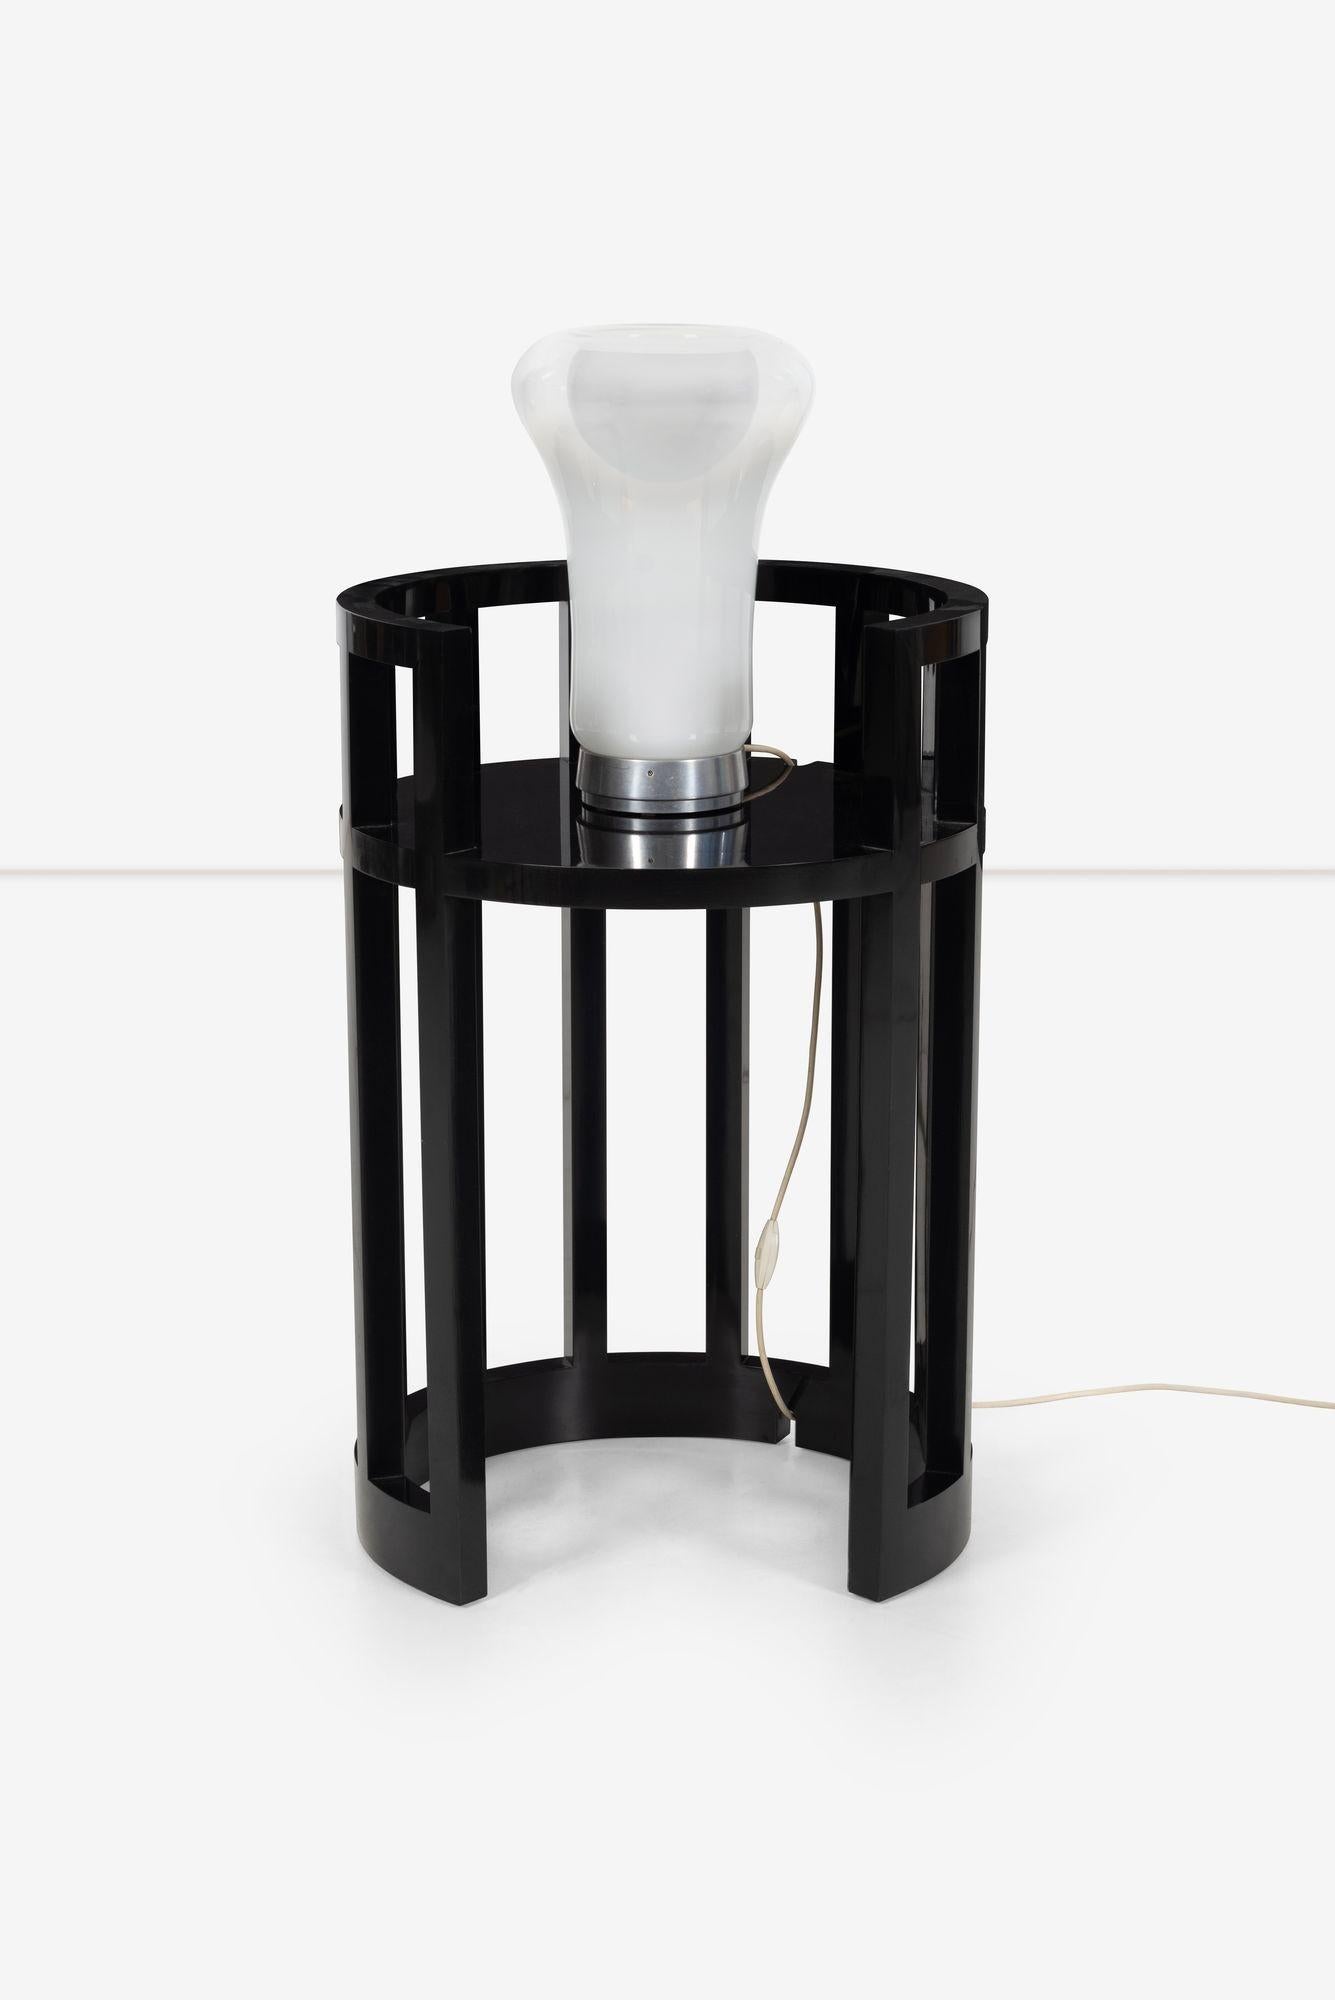 American Richard Meier Custom Lamp Table For Sale